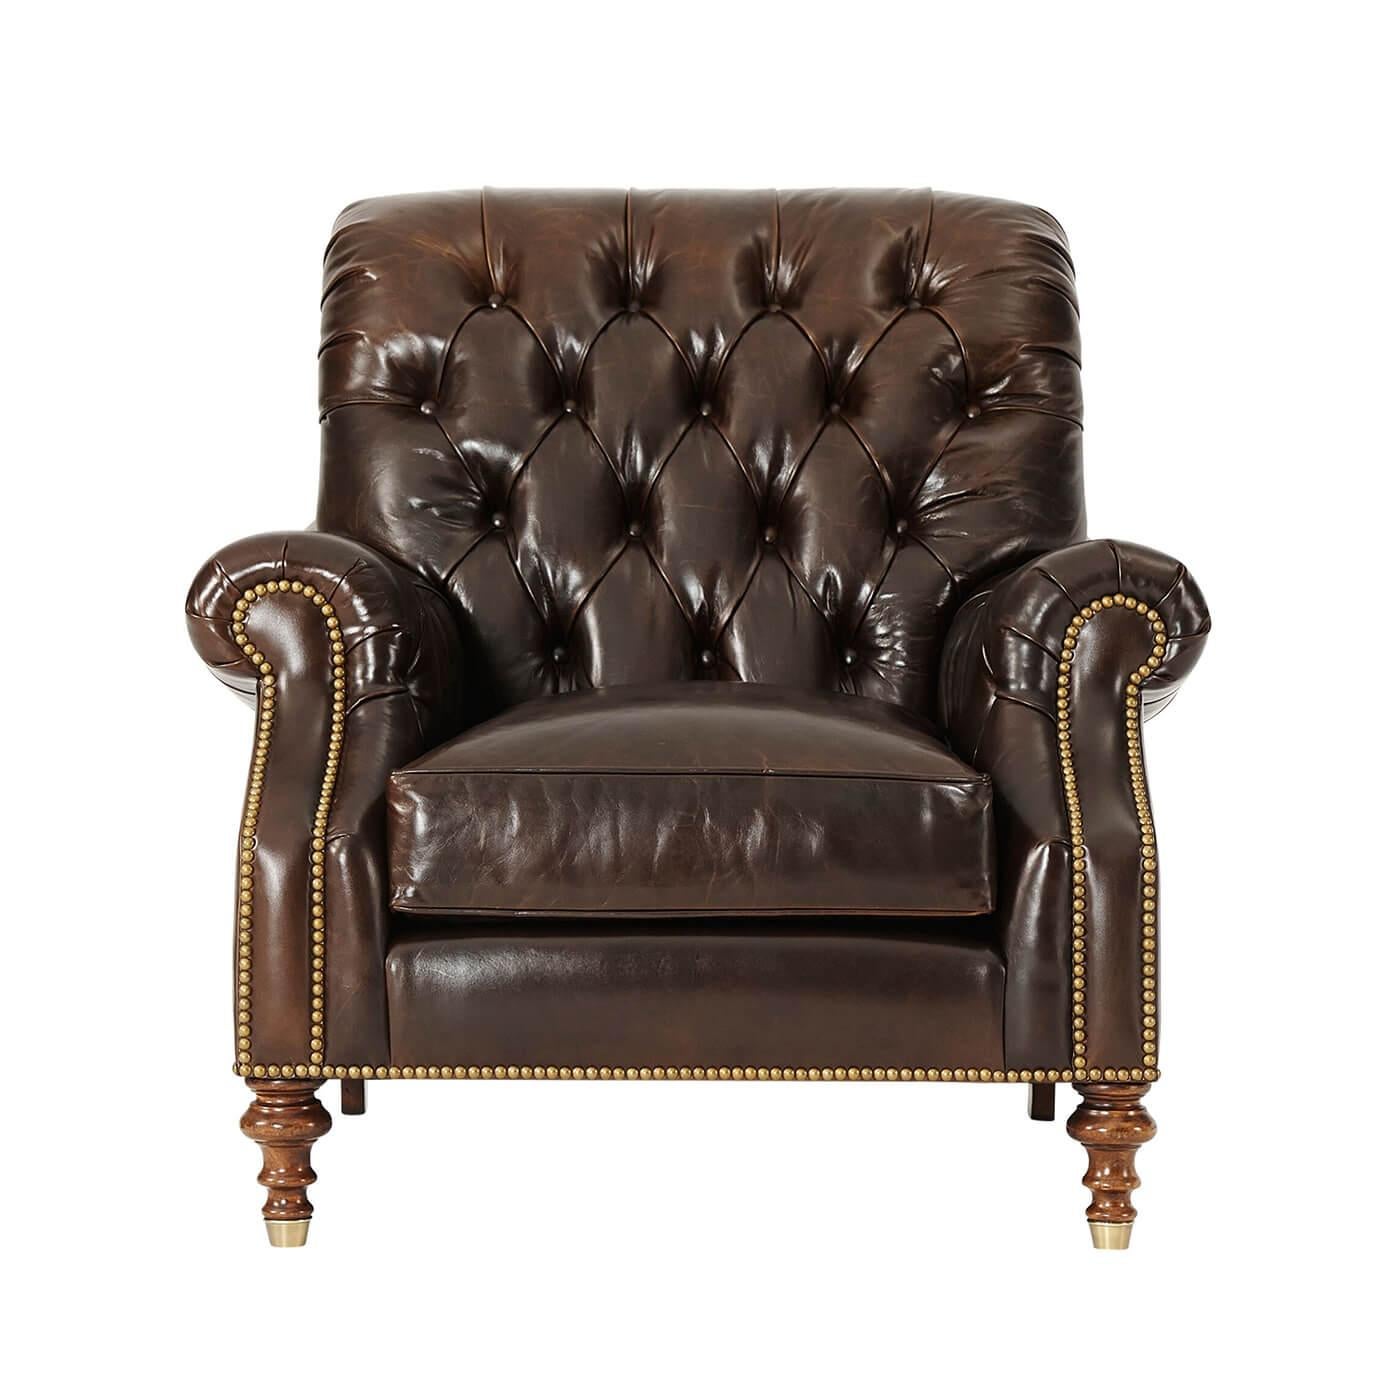 Ein ledergepolsterter Sessel im britischen Stil, mit getufteter Rückenlehne über einem gepolsterten Sitz, umgeben von getufteten Rollenarmen, auf gedrechselten Beinen mit Messingkappen. Inspiriert von einem viktorianischen Original.

Abmessungen: